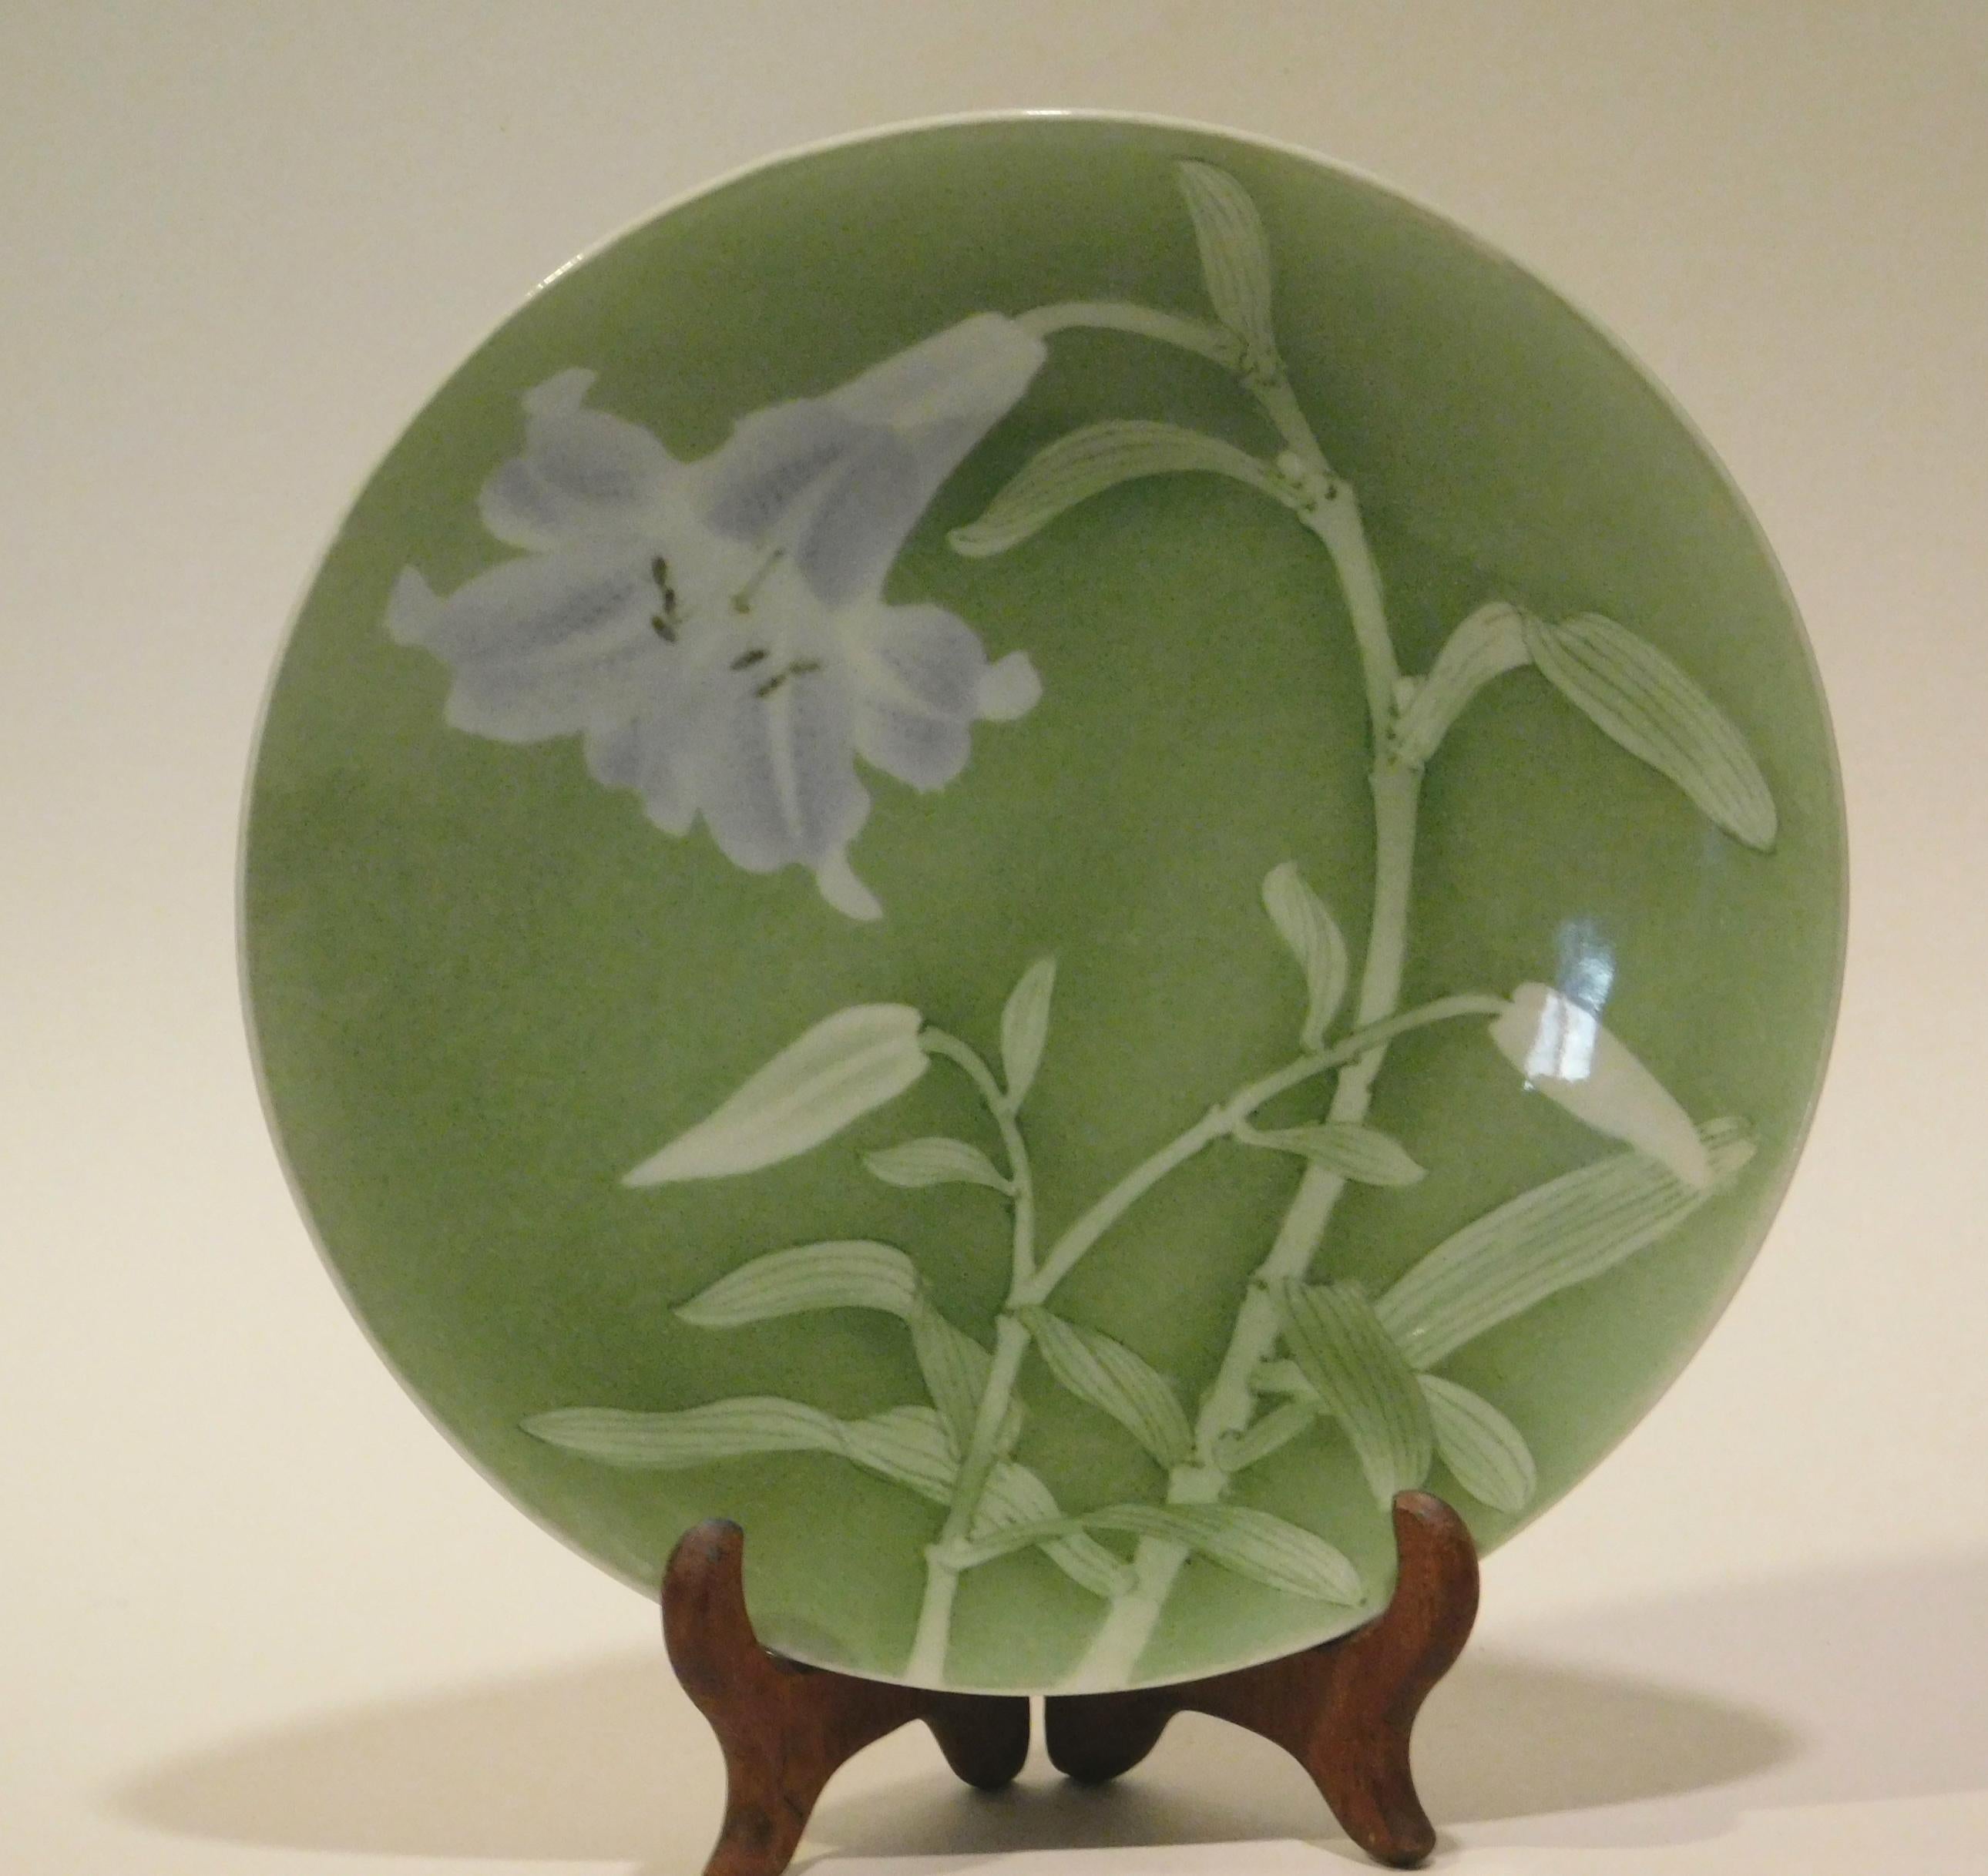 Schönes blassgrünes Keramiktablett mit weißen Lilien.
Auf dem Sockel ist es von Miyagawa (Makuzu) Kozan (1842-1916) signiert.
Dieses Tablett hat keine Schäden und ist in perfektem Zustand. 
Er hat einen Durchmesser von 8